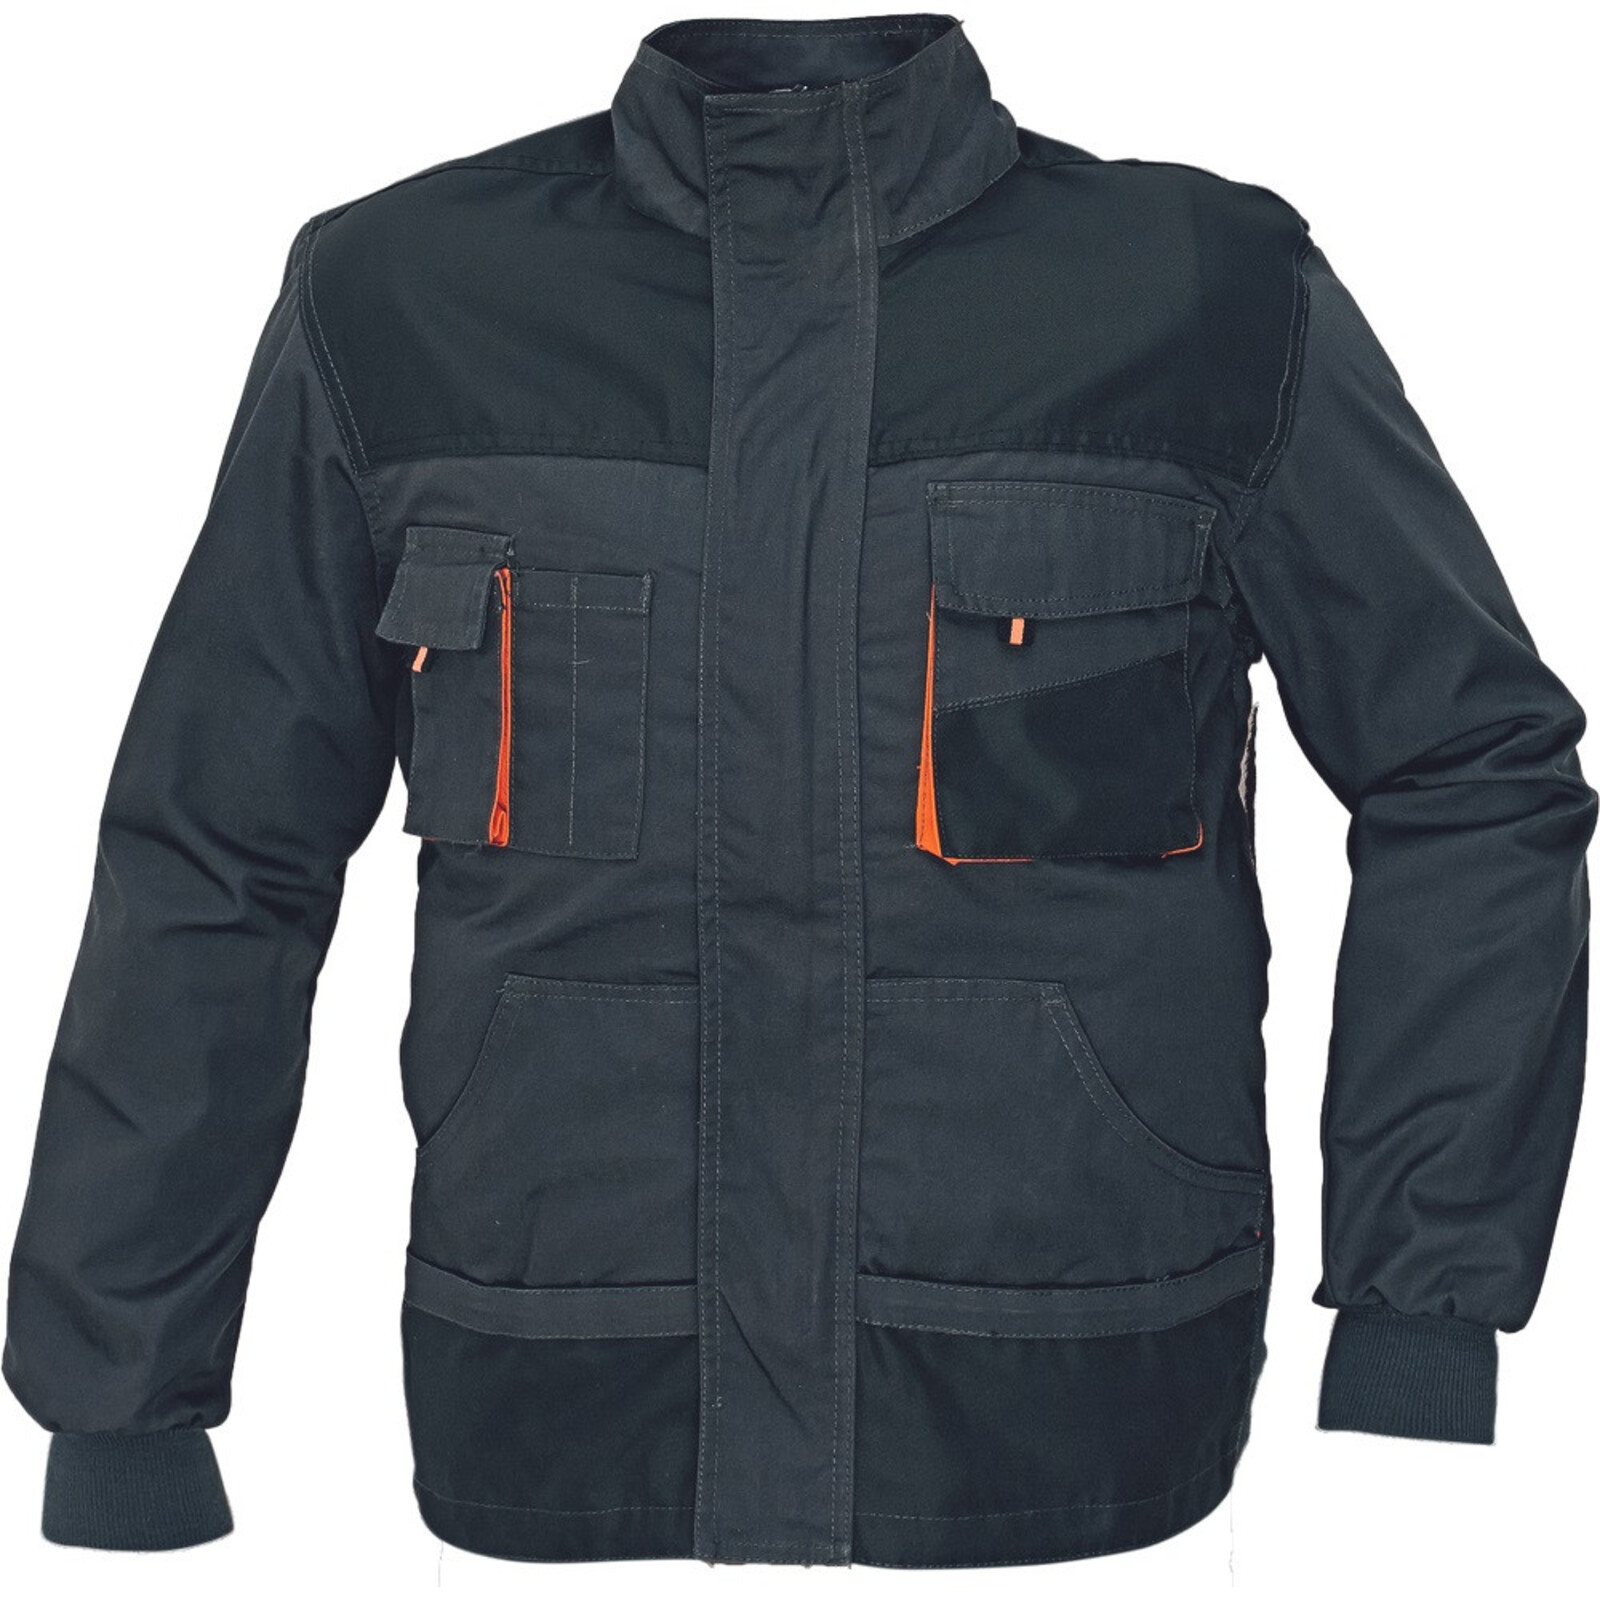 Odolná montérková bunda Emerton pánska - veľkosť: 58, farba: čierna/oranžová